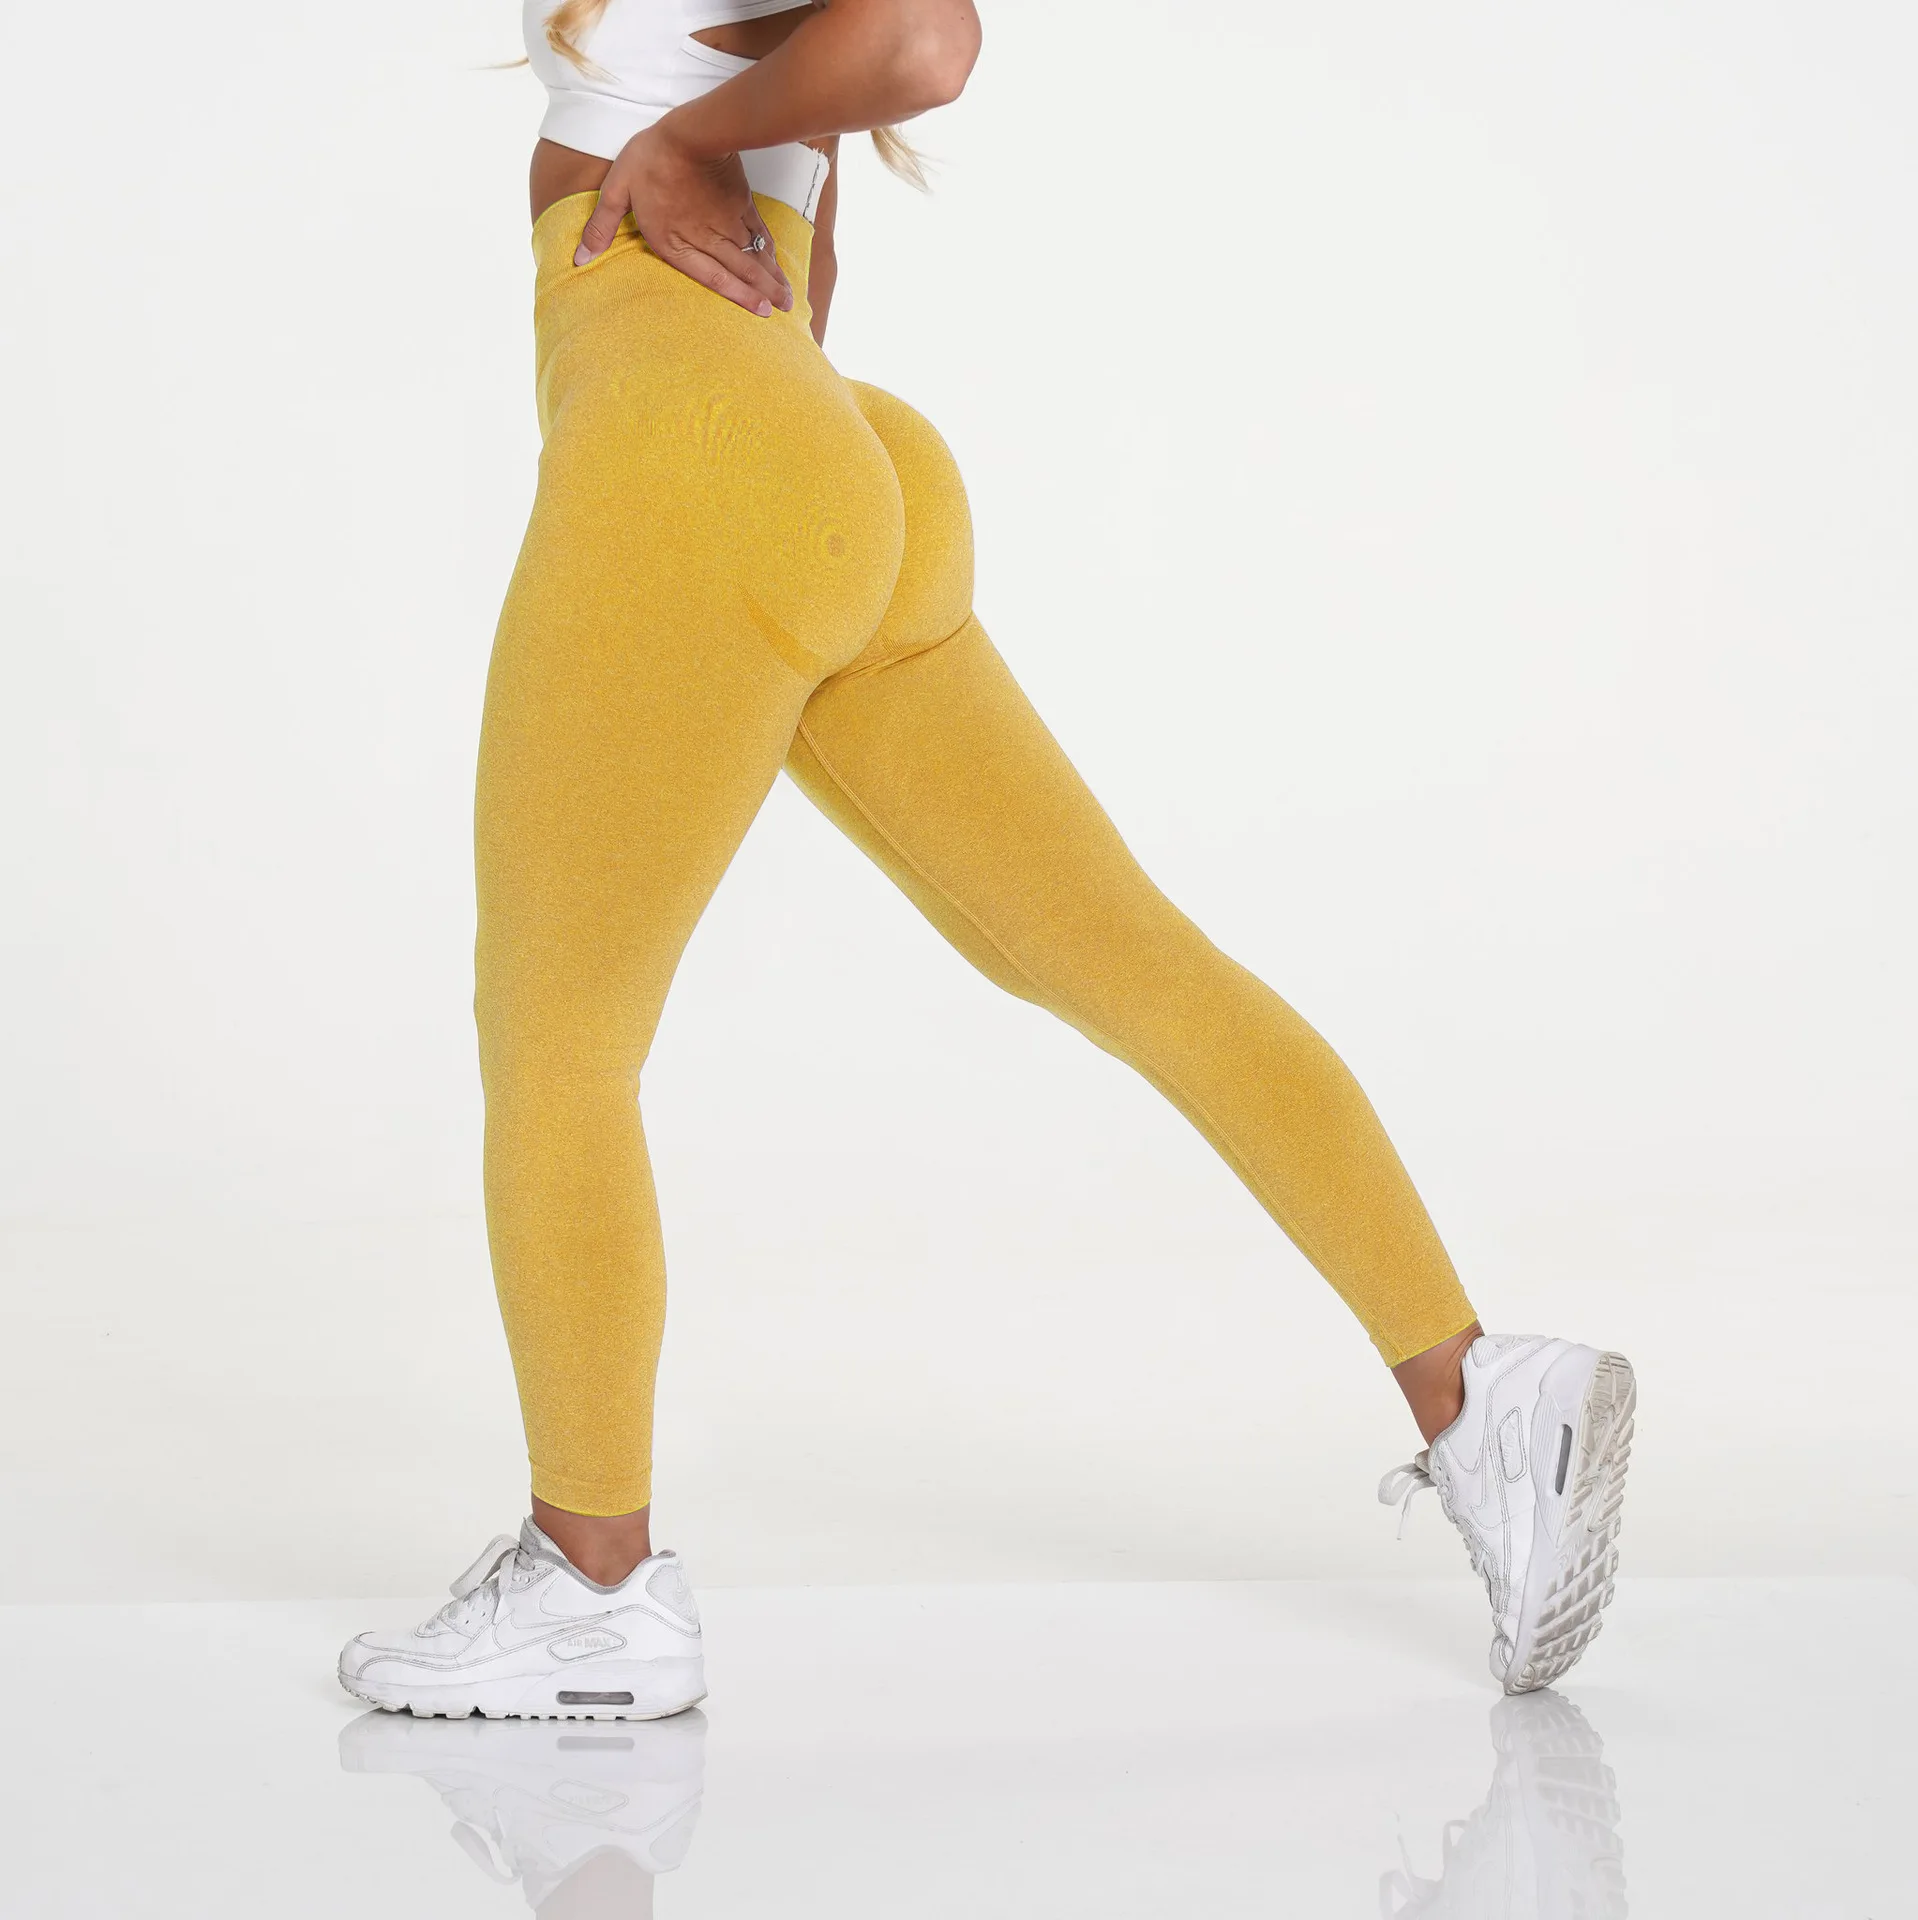 New Vital Seamless Leggings For Women Workout Gym Legging High